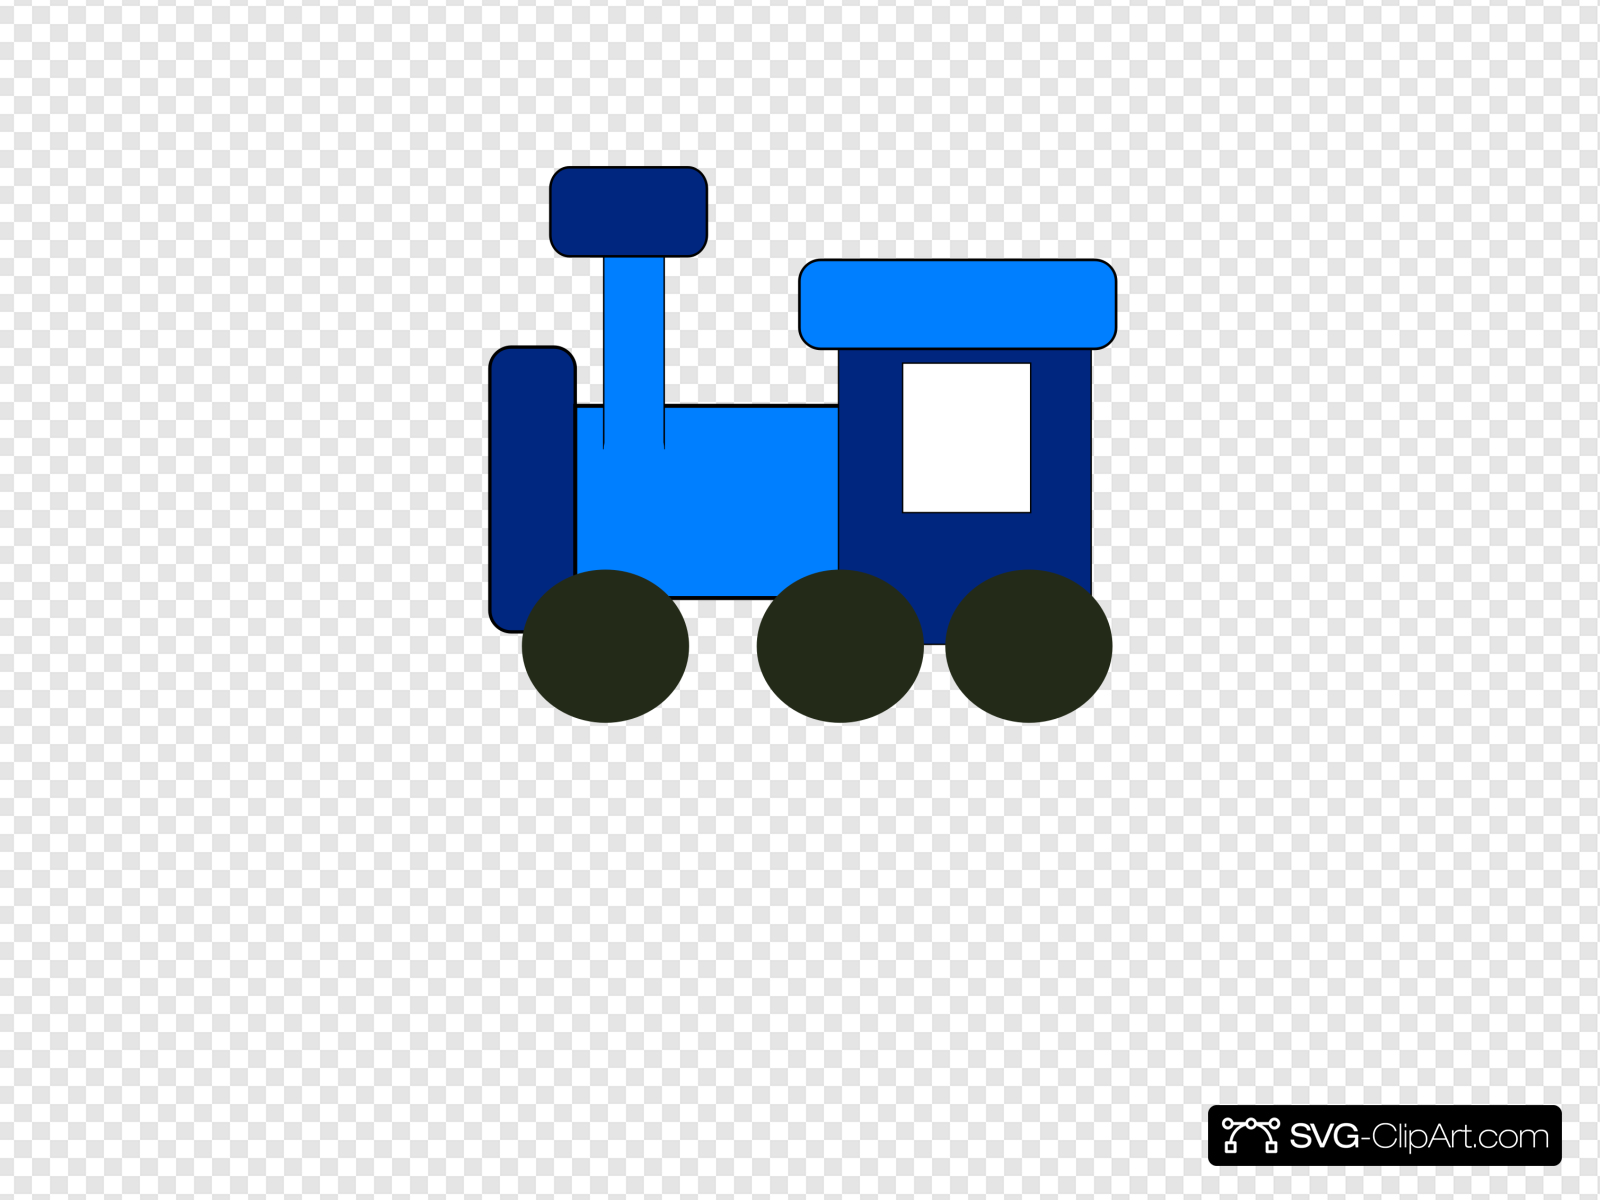 Blue Train Clip art, Icon and SVG